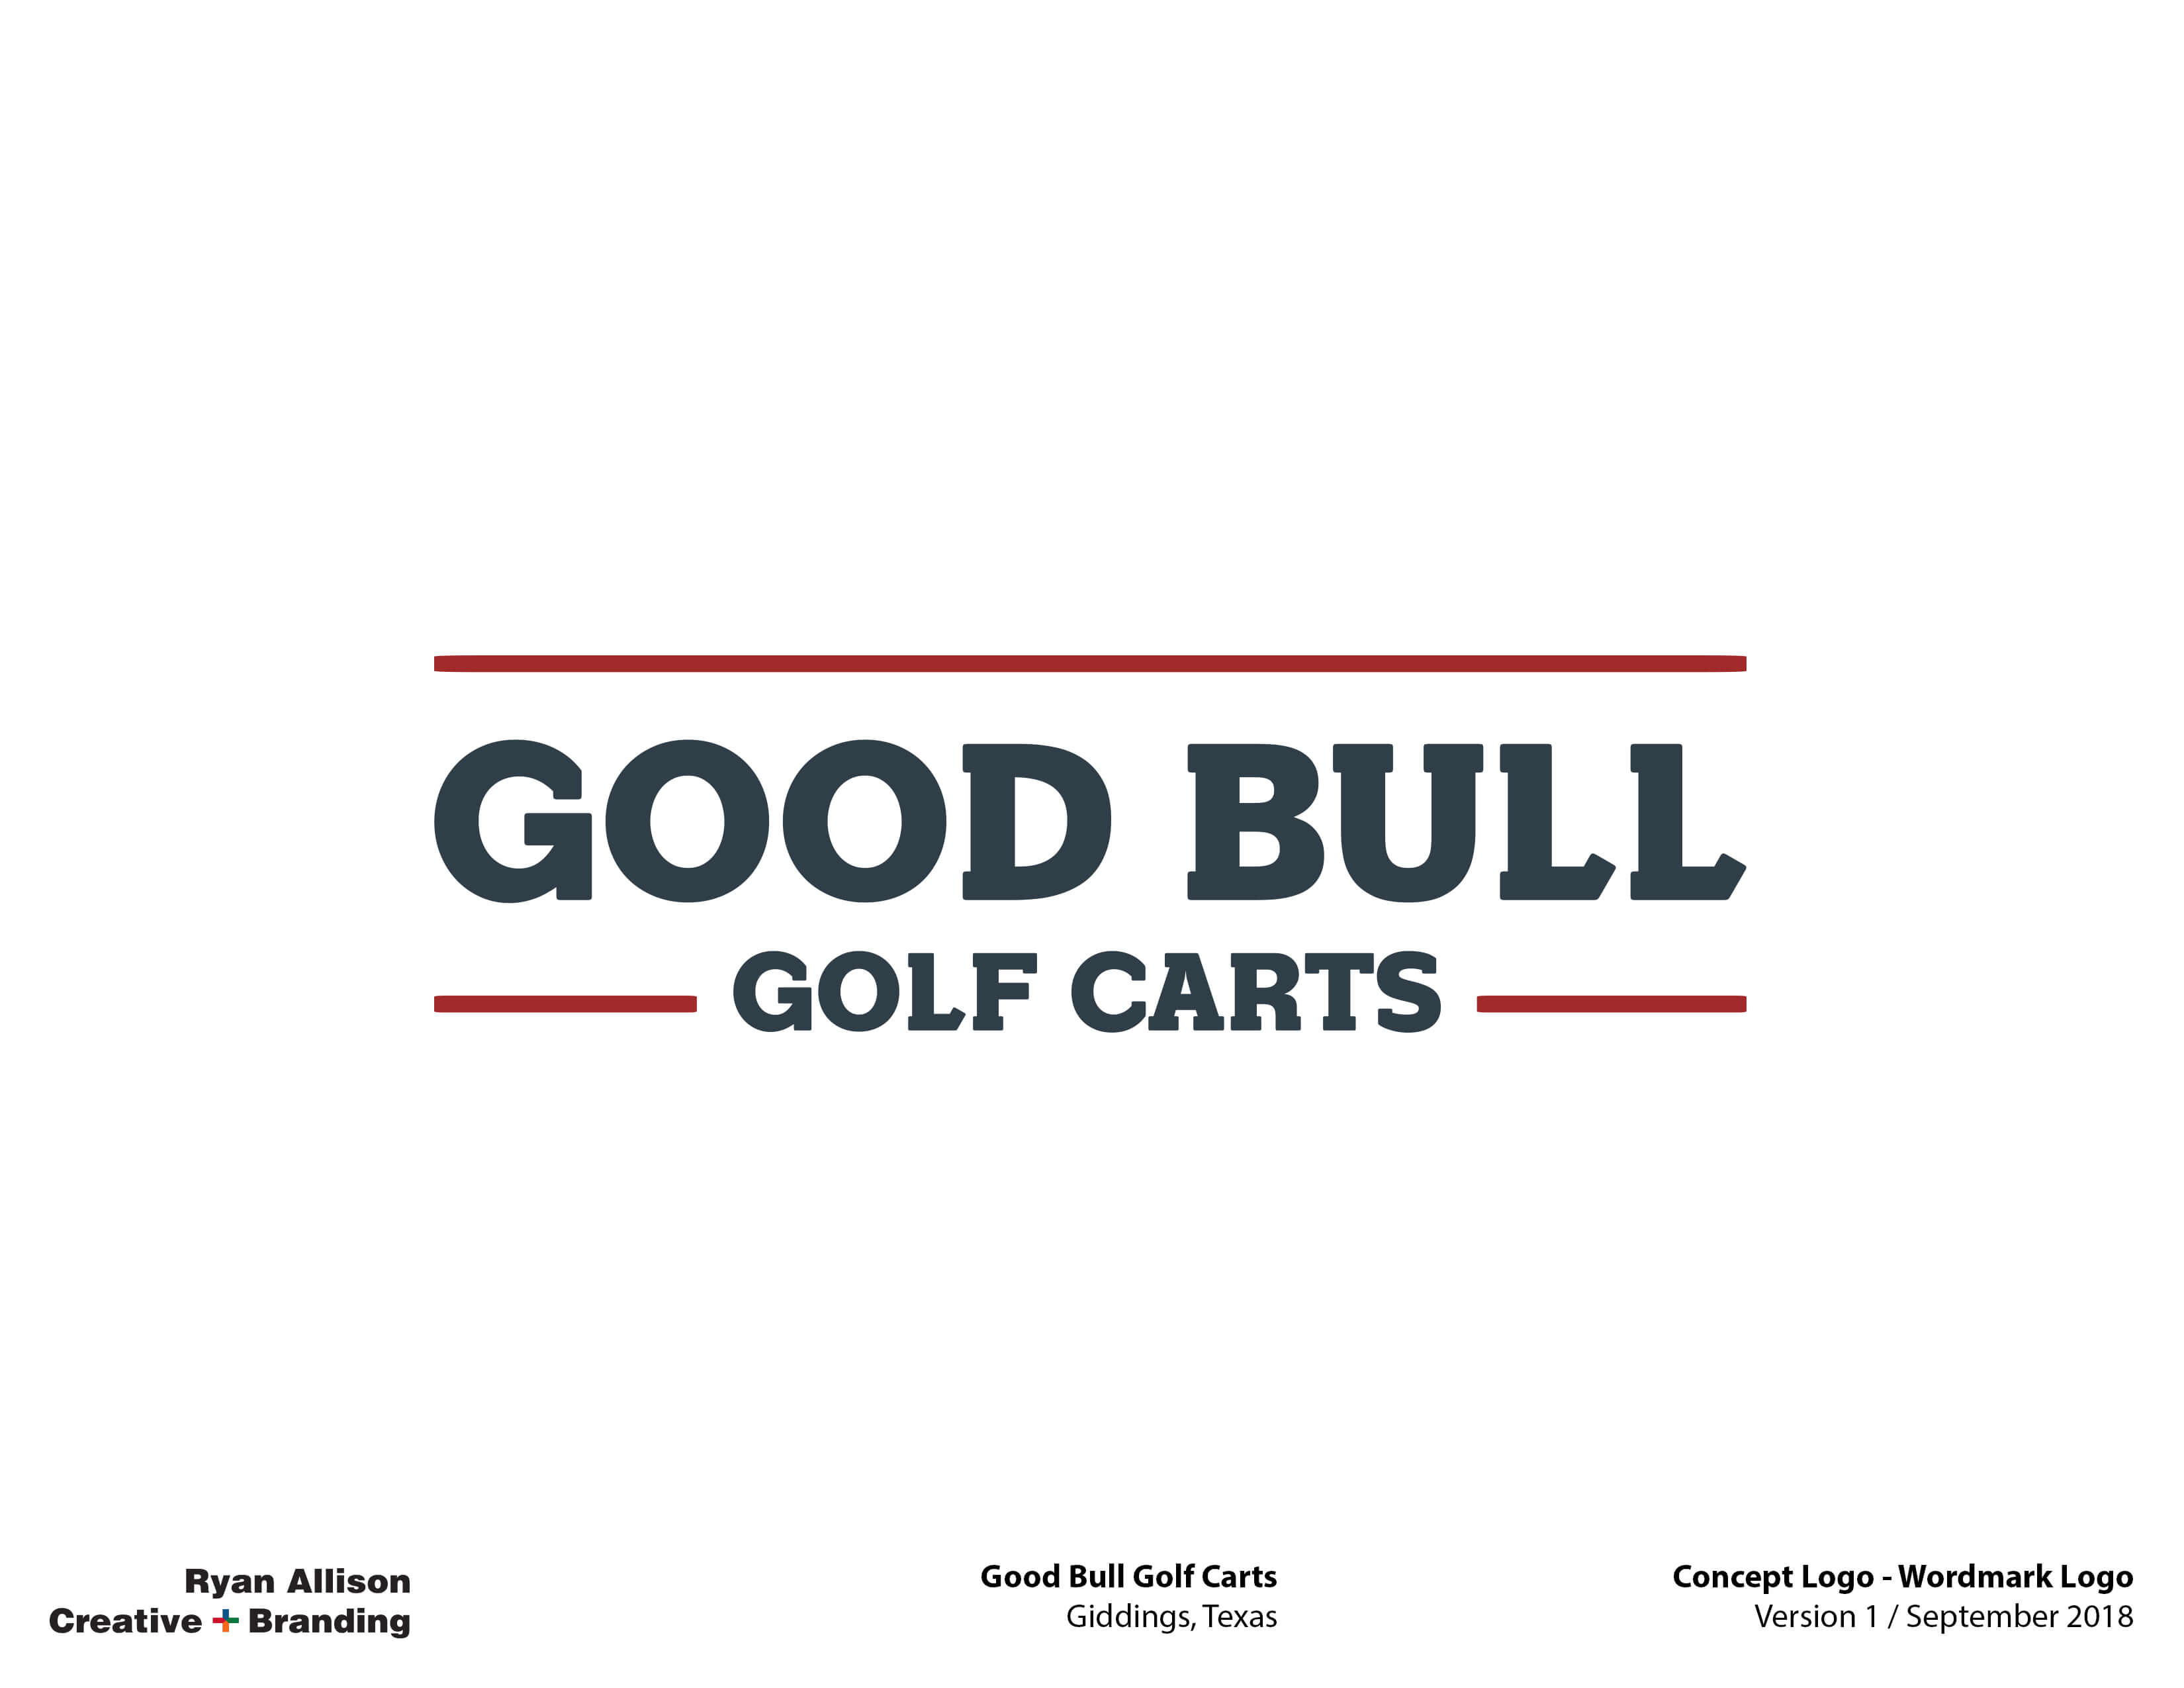 Good Bull Golf Carts Wordmark Logo - Logo - Ryan Allison Creative + Branding